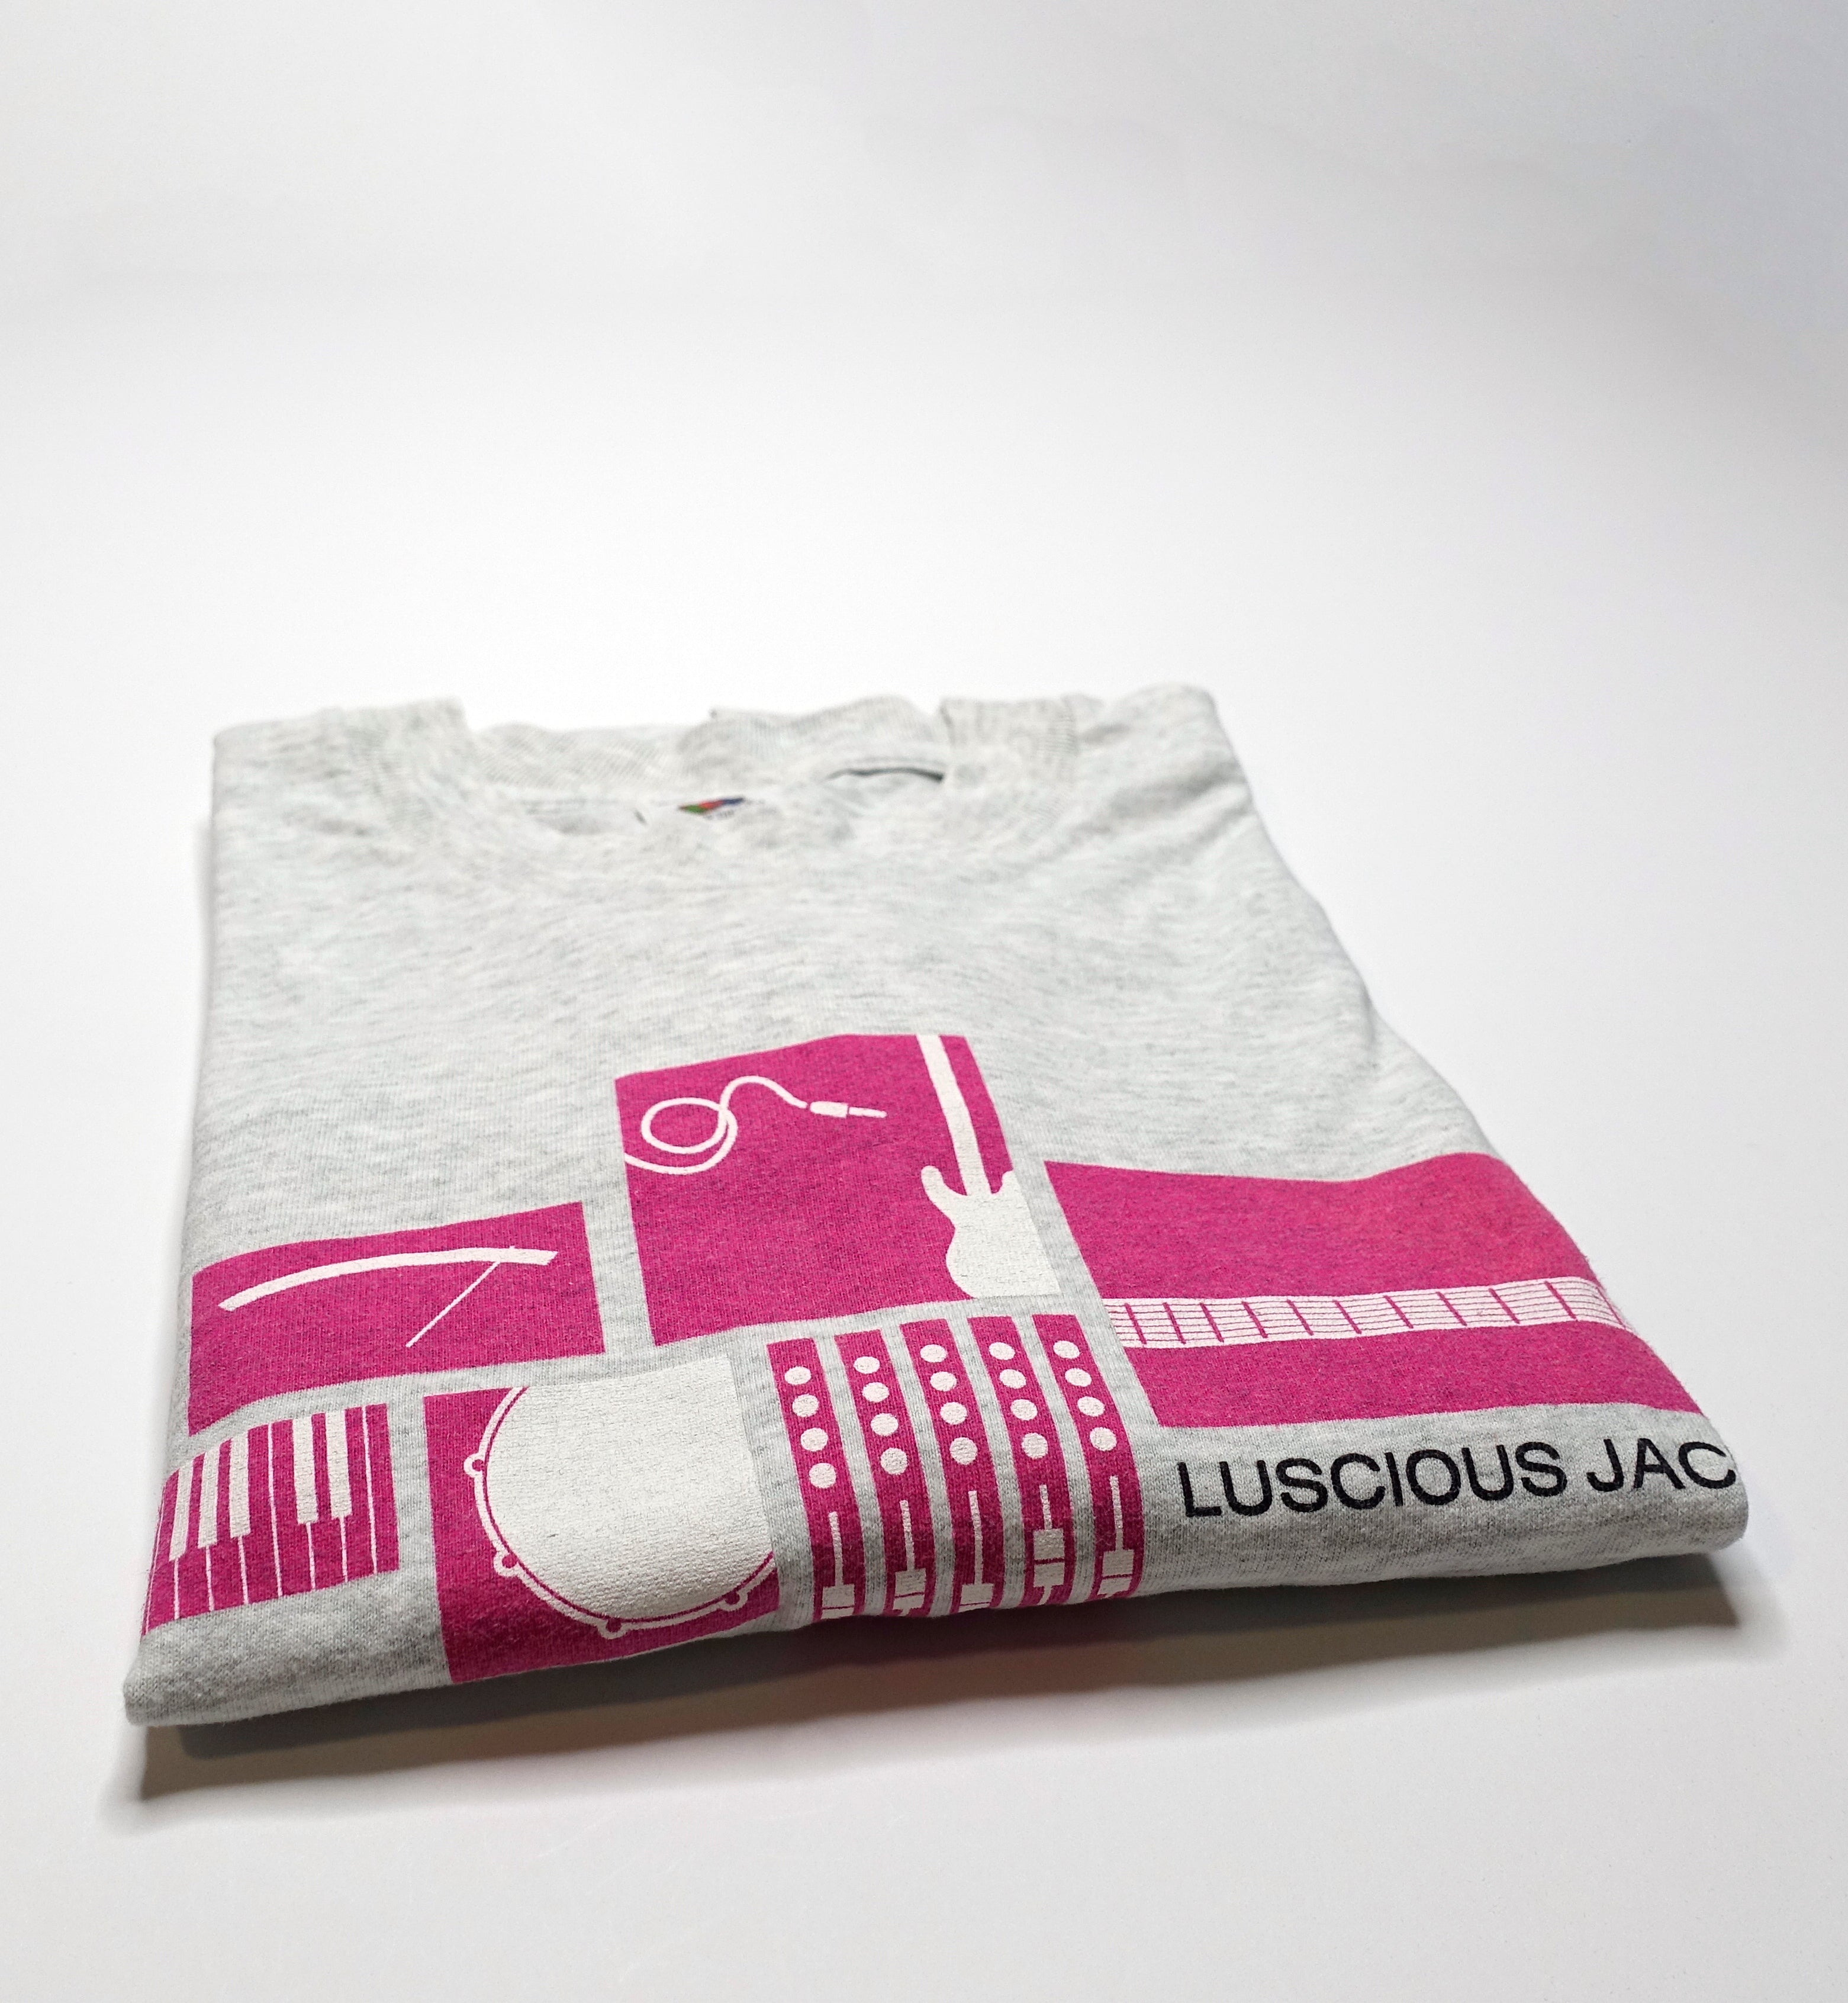 Luscious Jackson -  Electric Honey 1998 Tour Long Sleeve Shirt Size Large